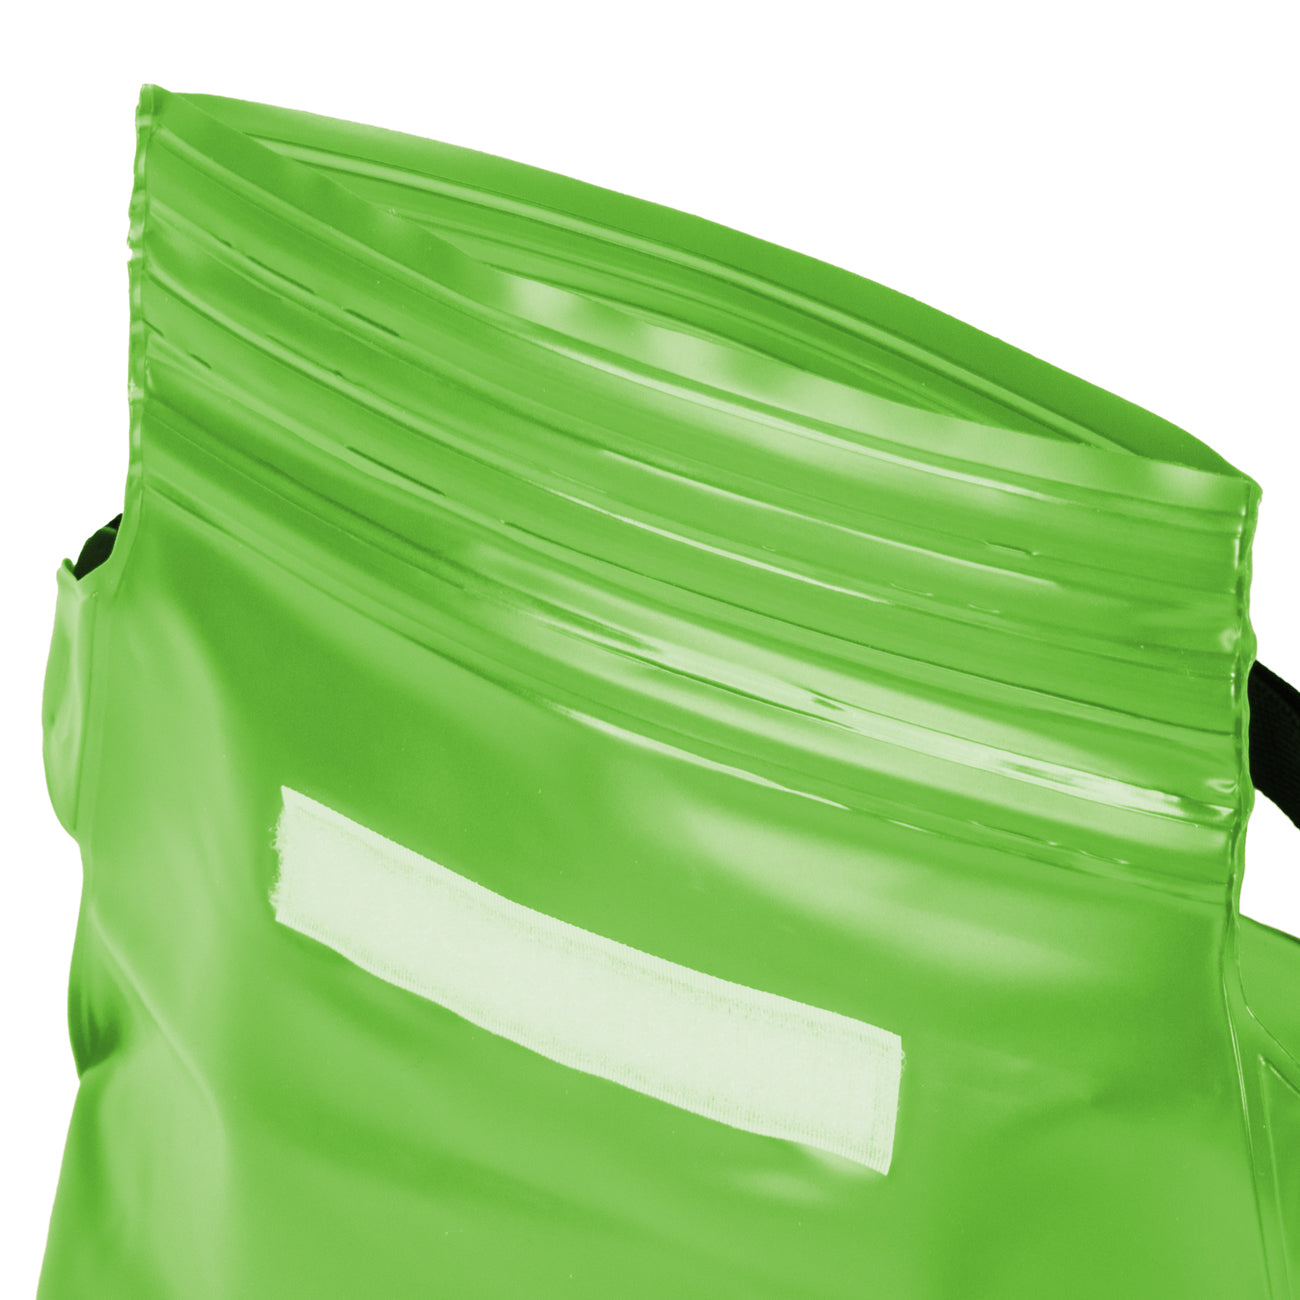 PVC waterproof pouch / waist bag - green